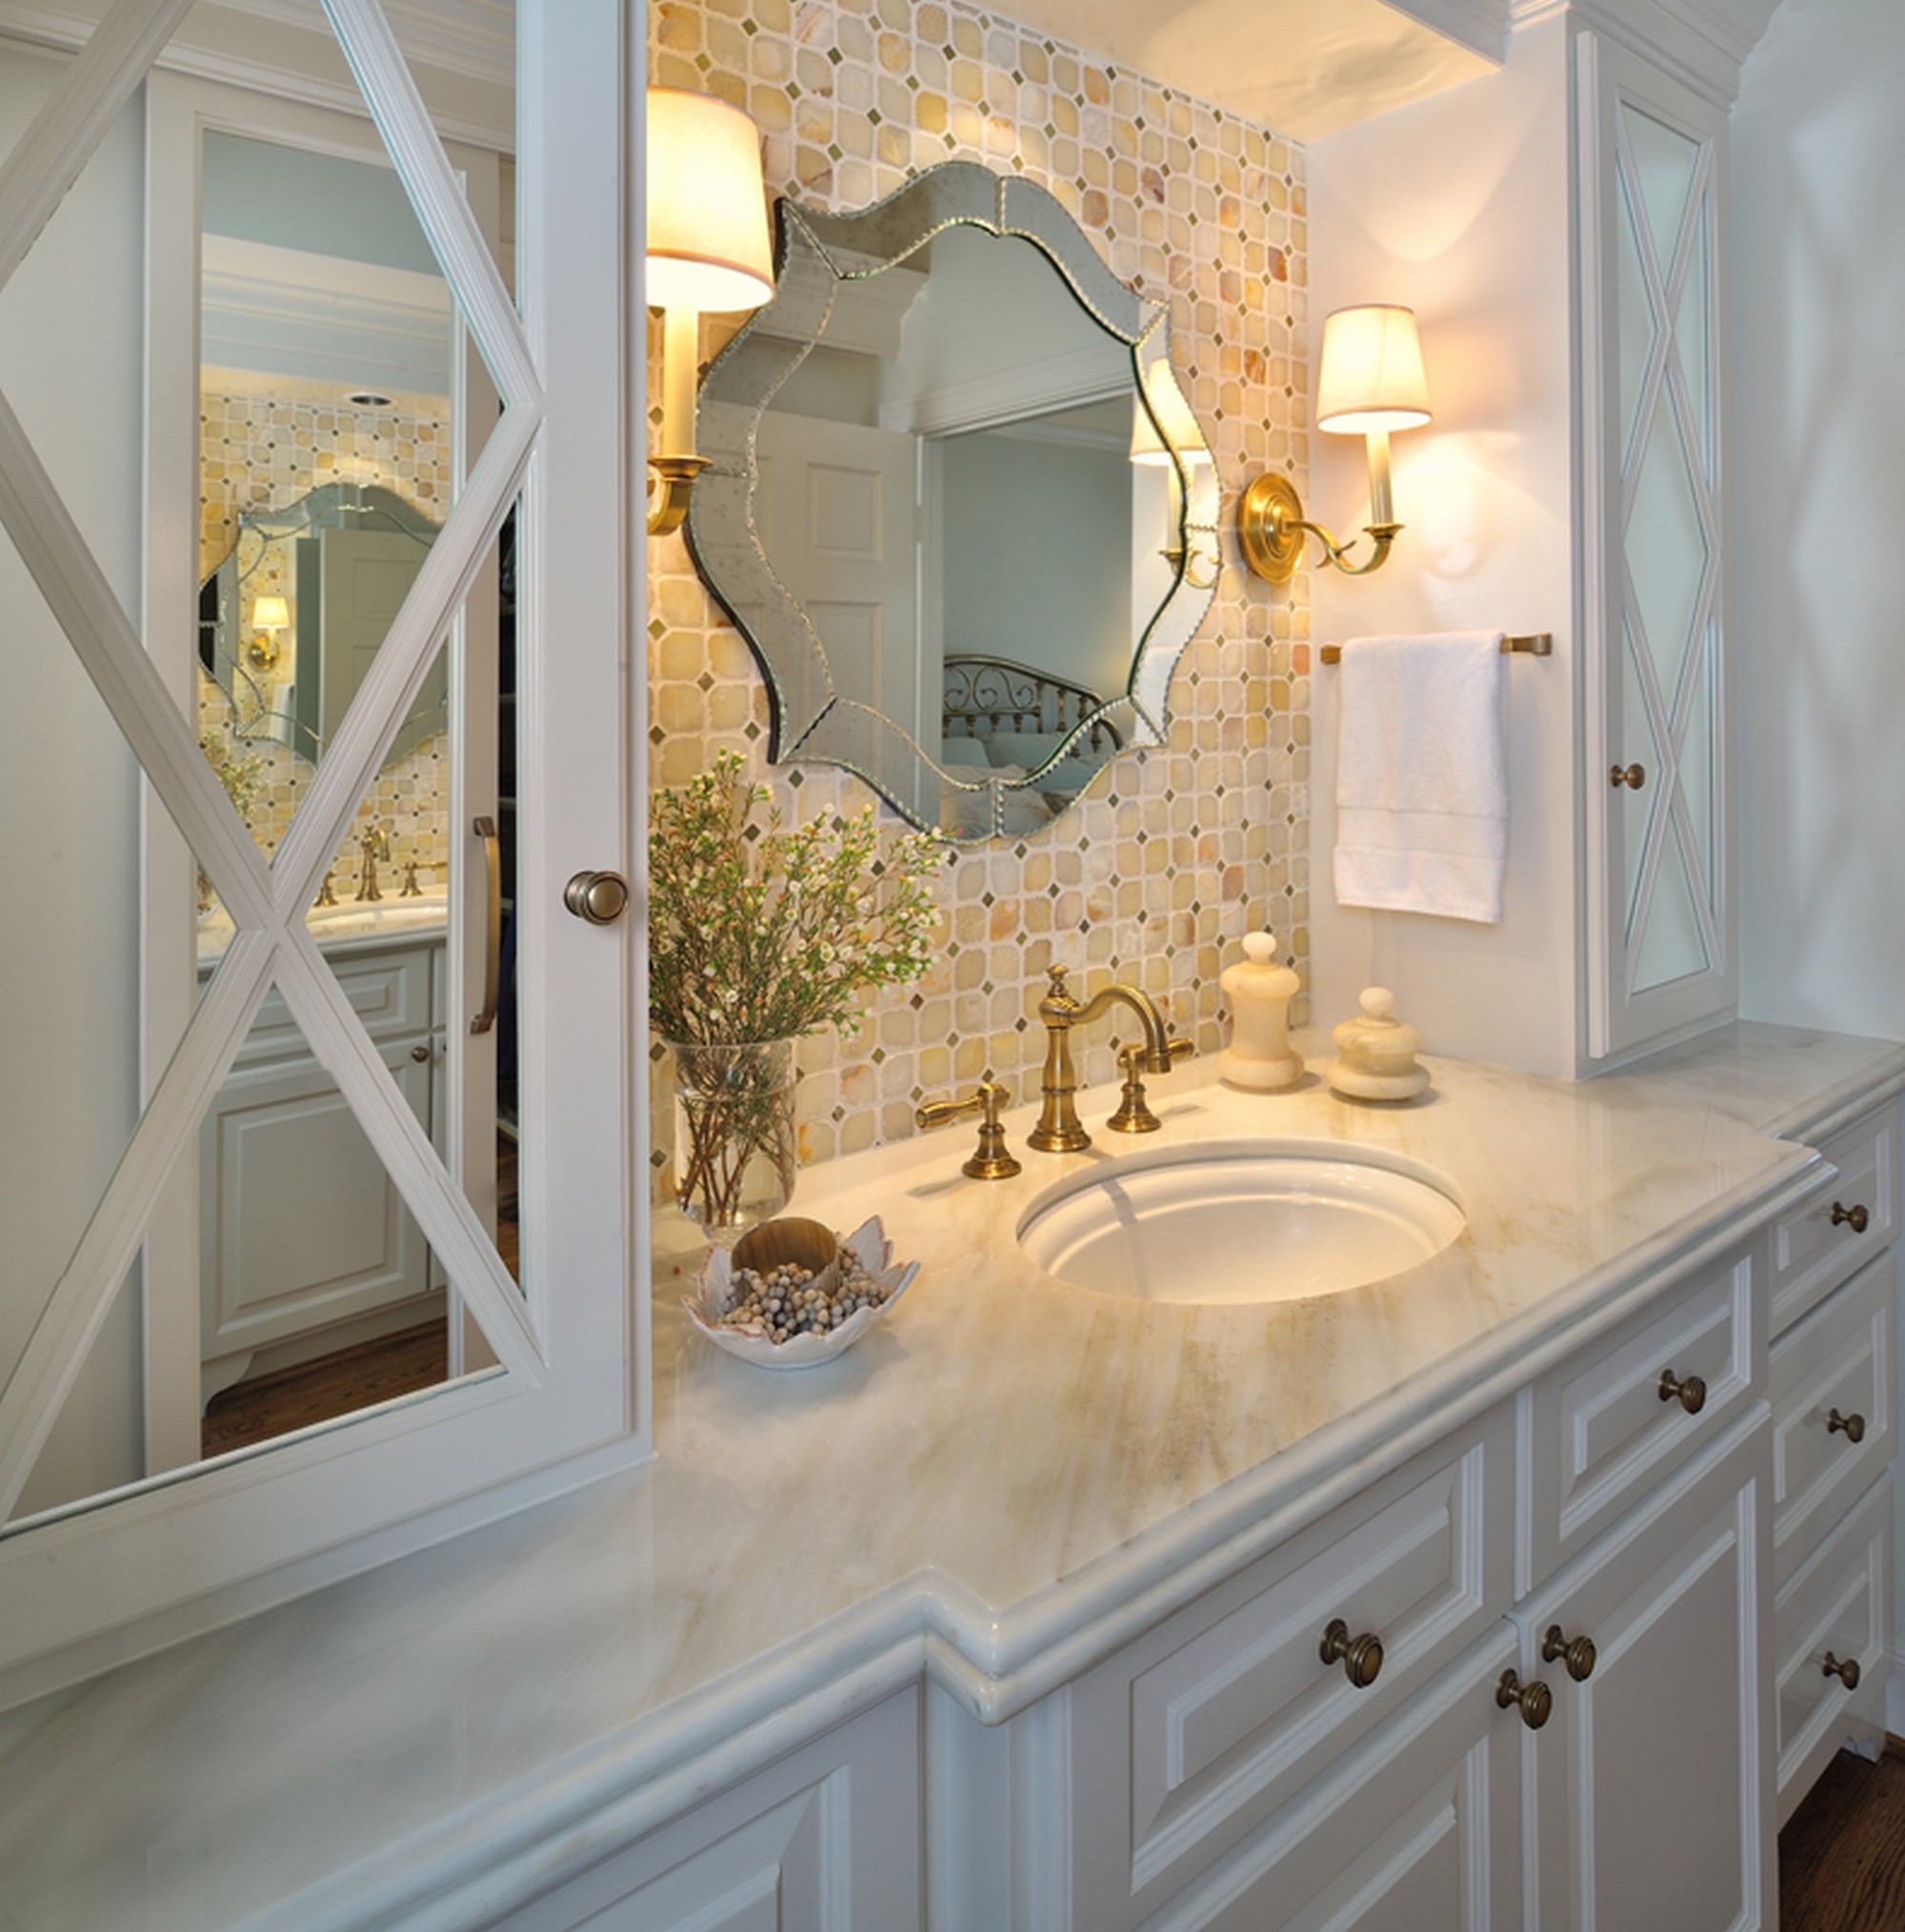 Exquisite Antique Bathroom With Unique Bathroom Mirror Amidug